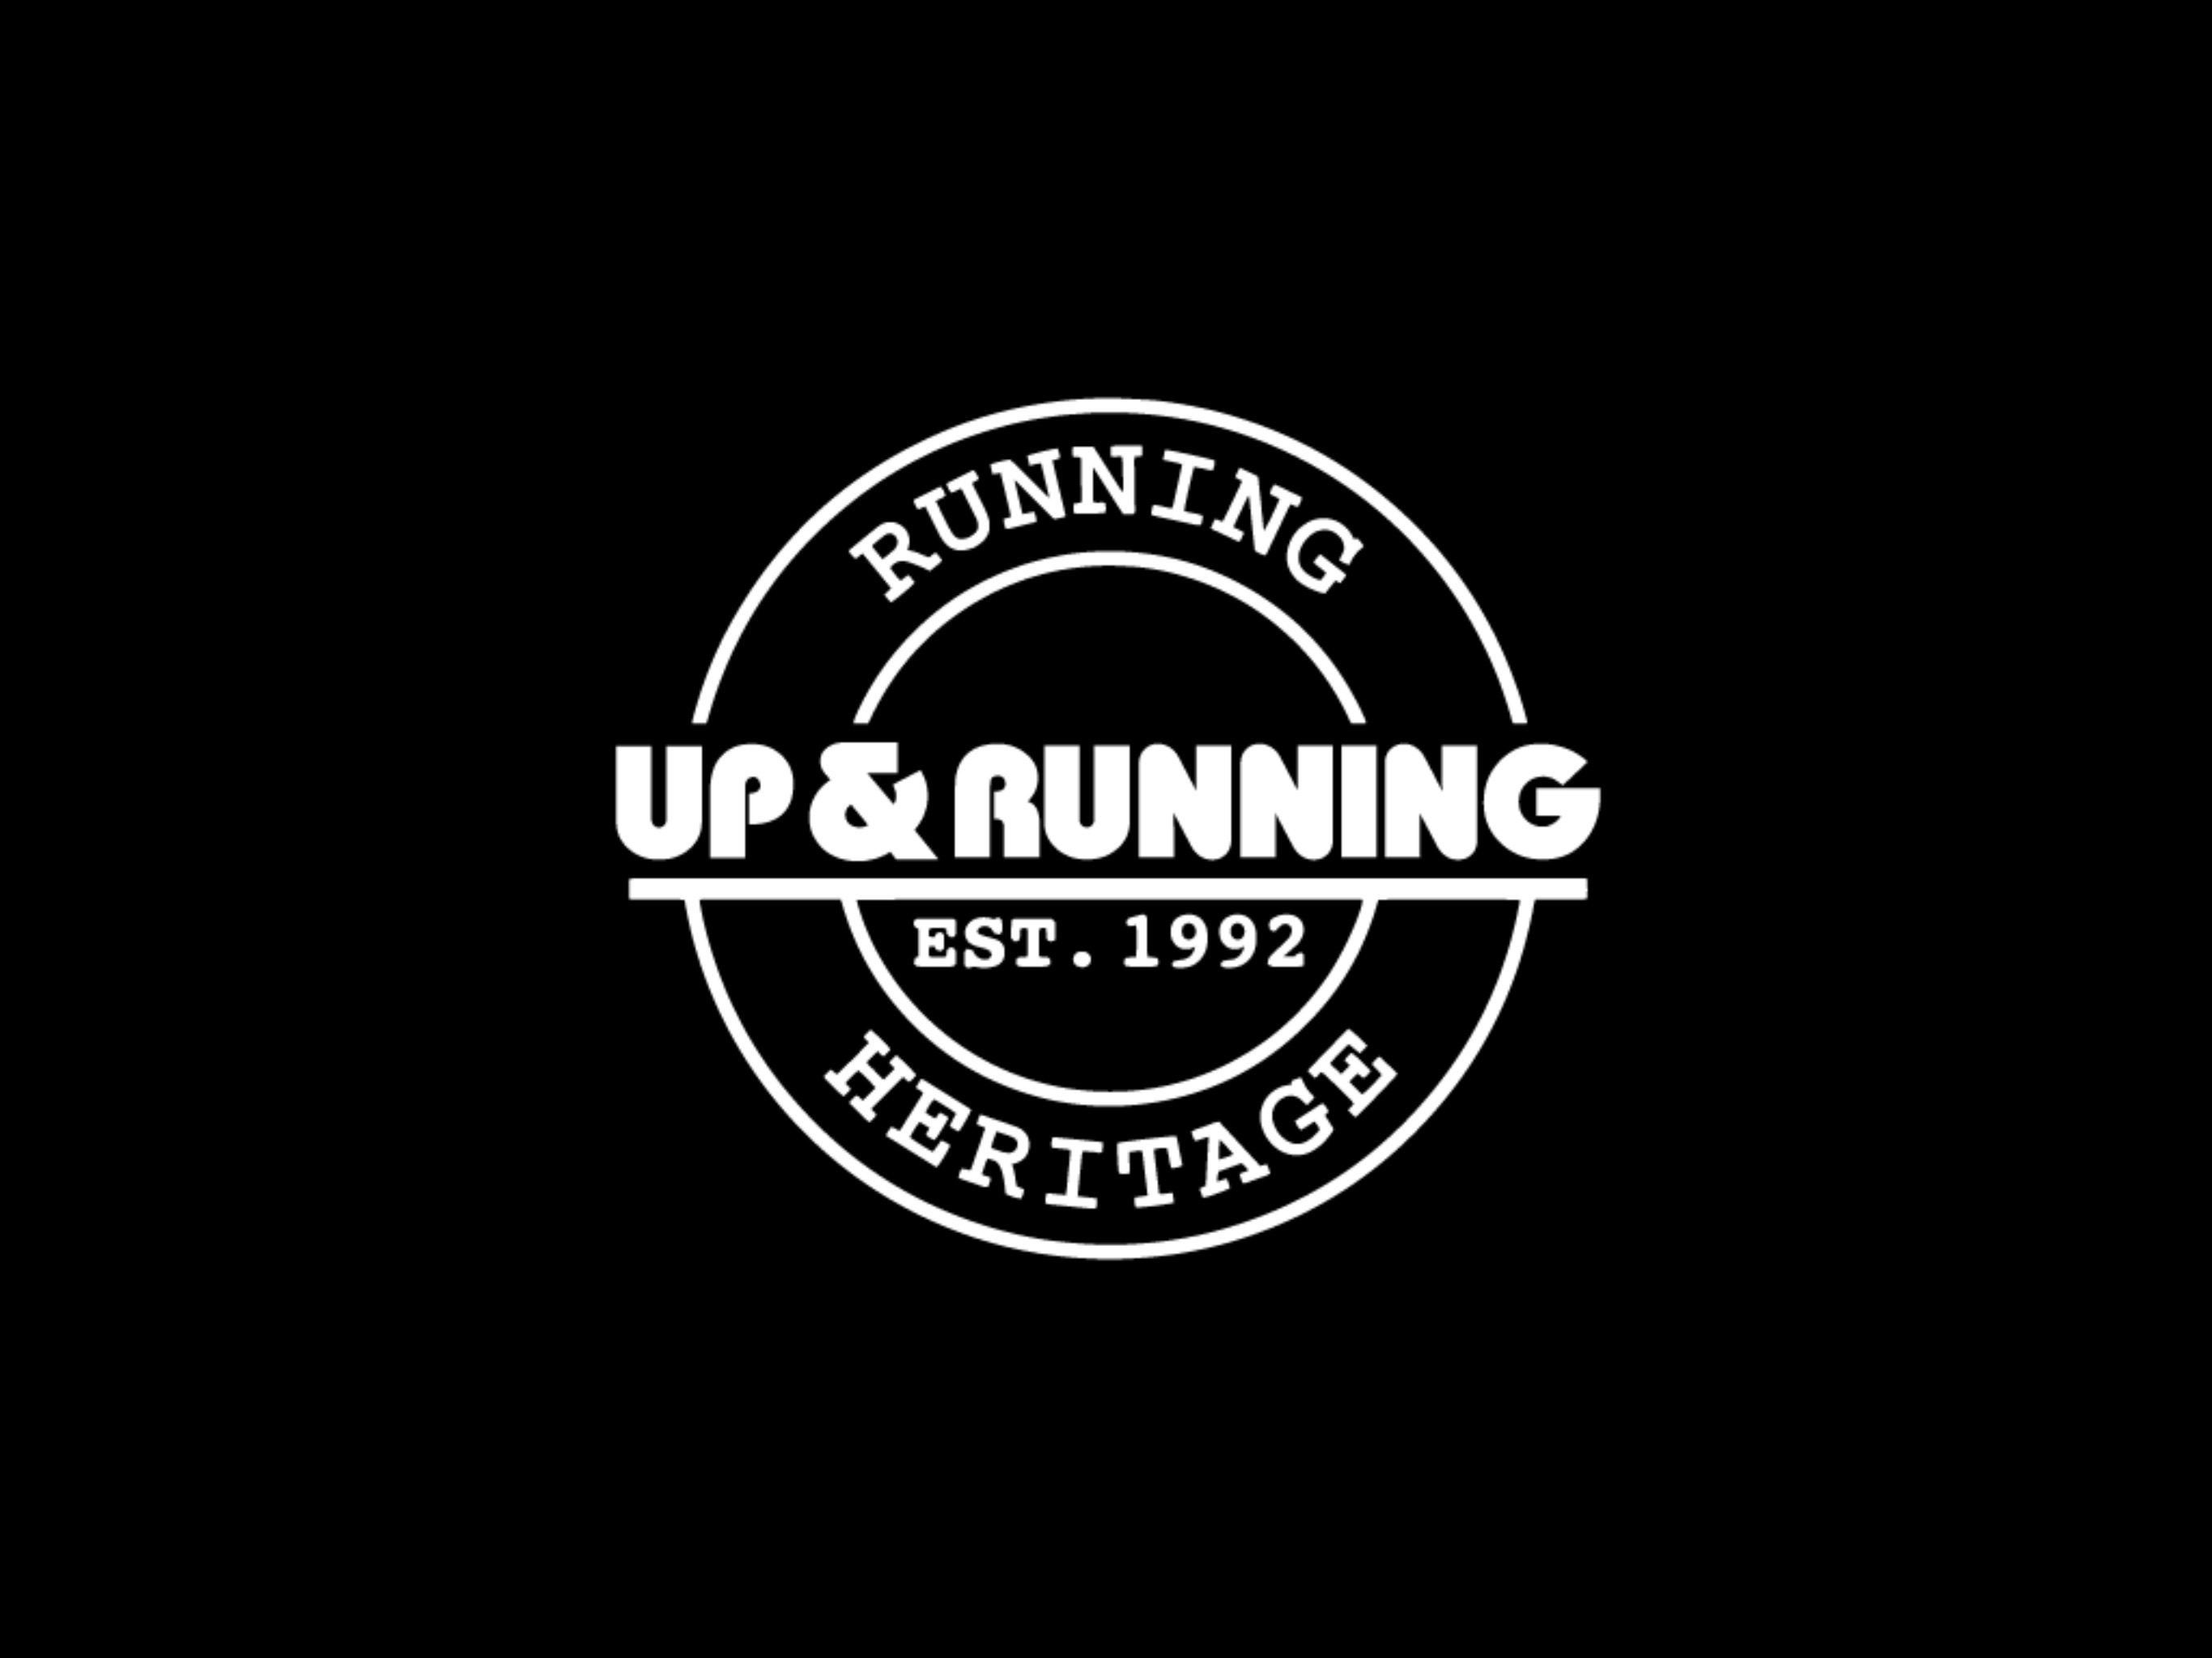 Up & Runningのおすすめ画像1